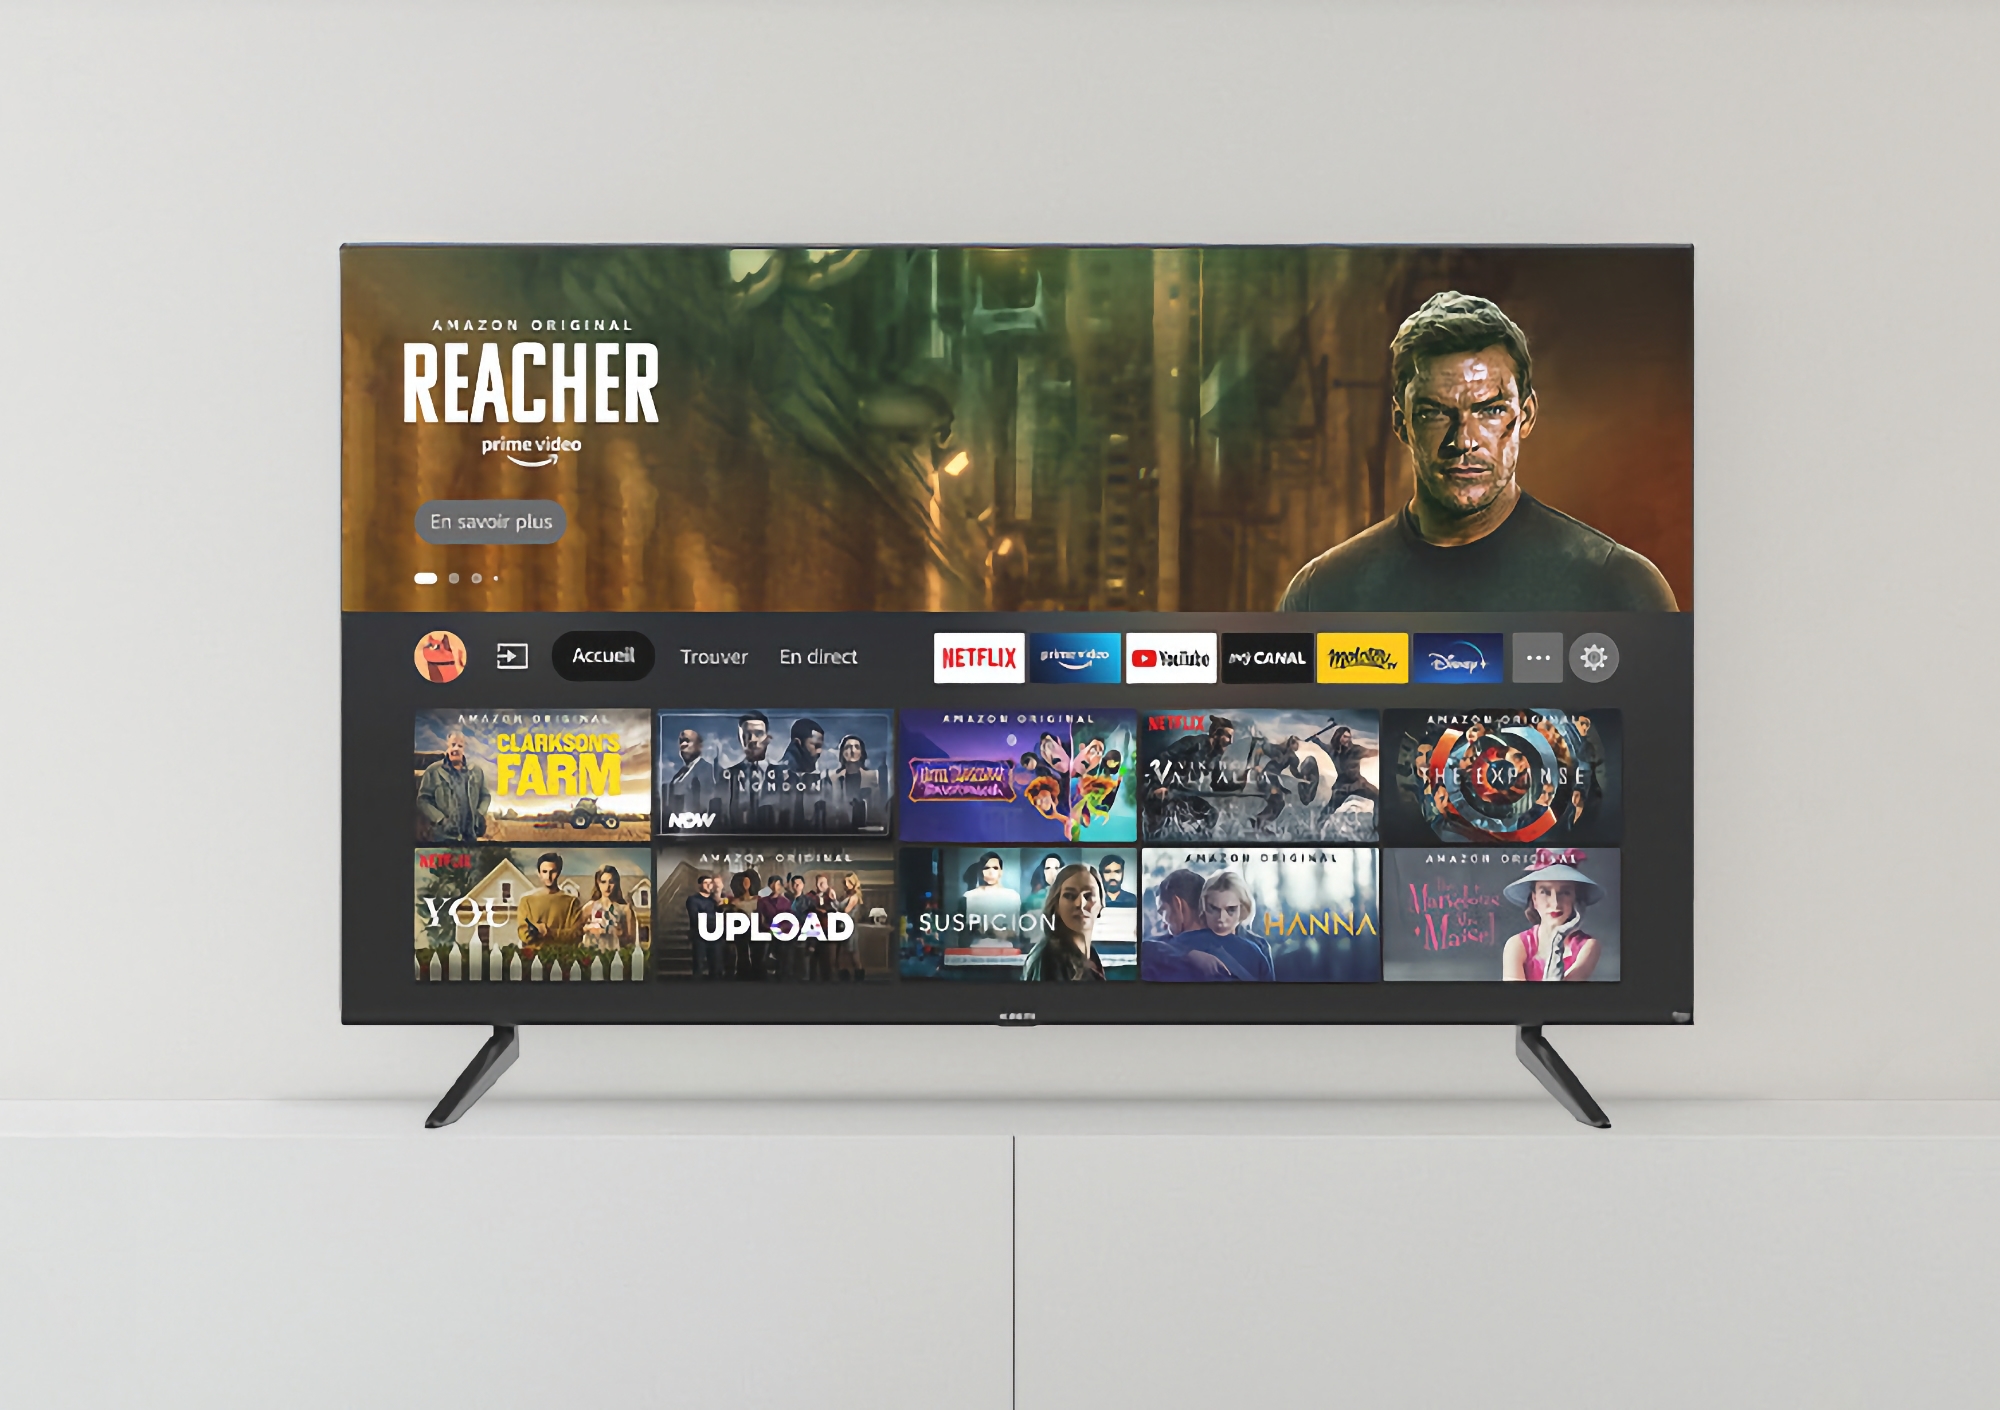 Xiaomi zaprezentowało w Europie nową wersję Fire TV F2 z 32-calowym ekranem i obsługą AirPlay